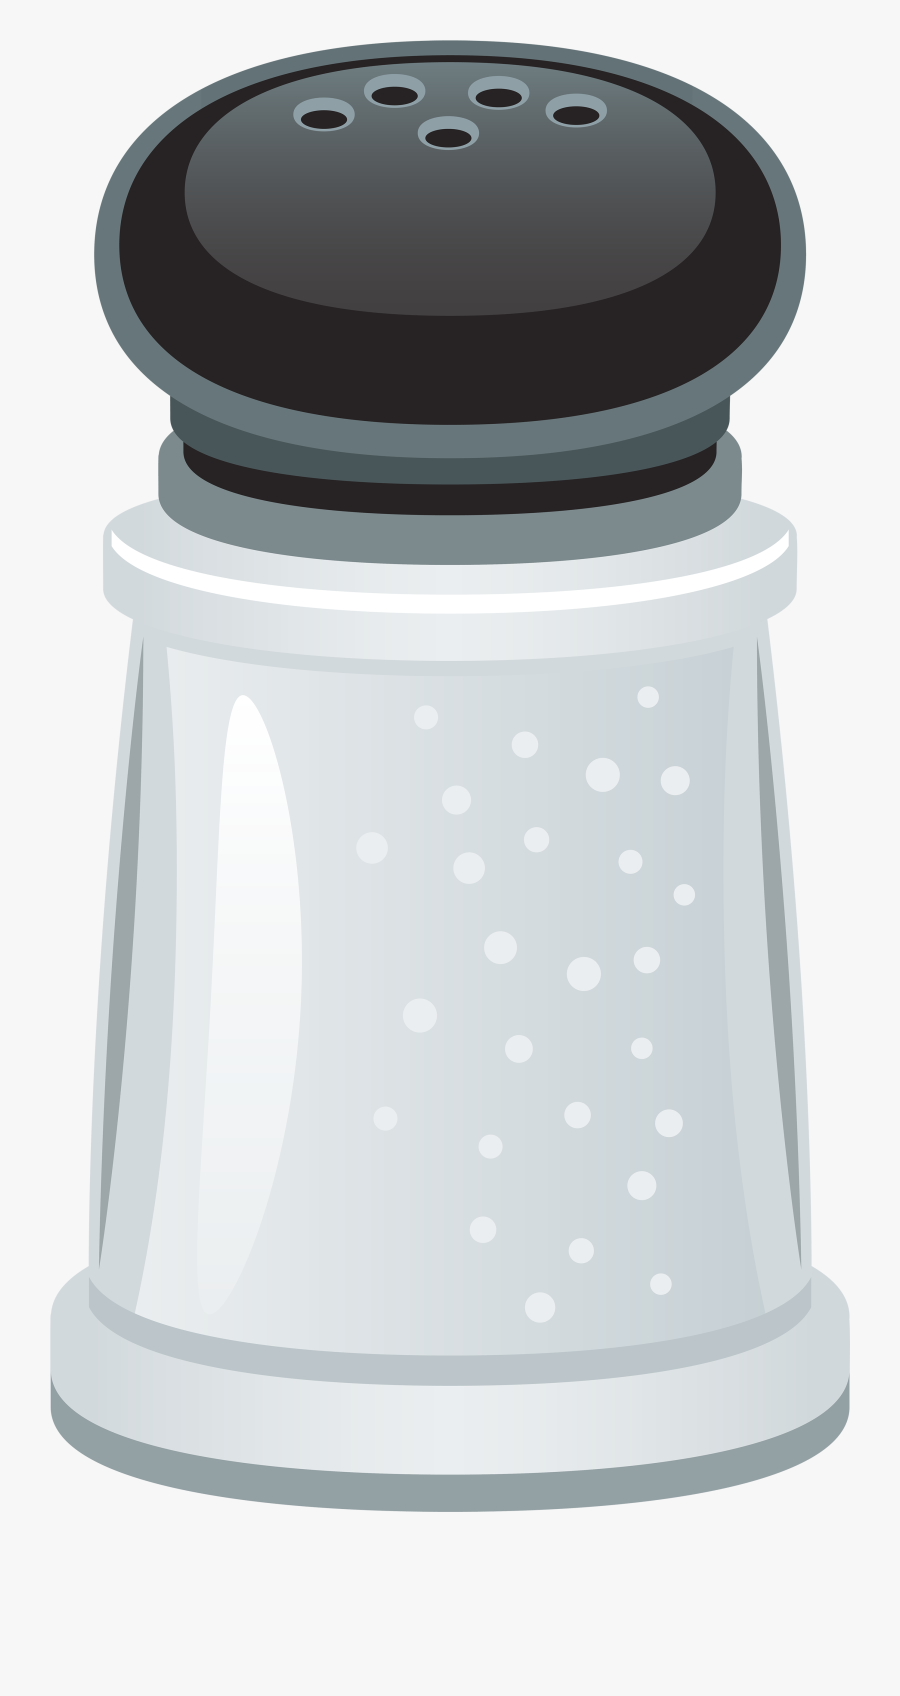 Saltshaker Png Clipart - Transparent Salt Shaker Clipart, Transparent Clipart